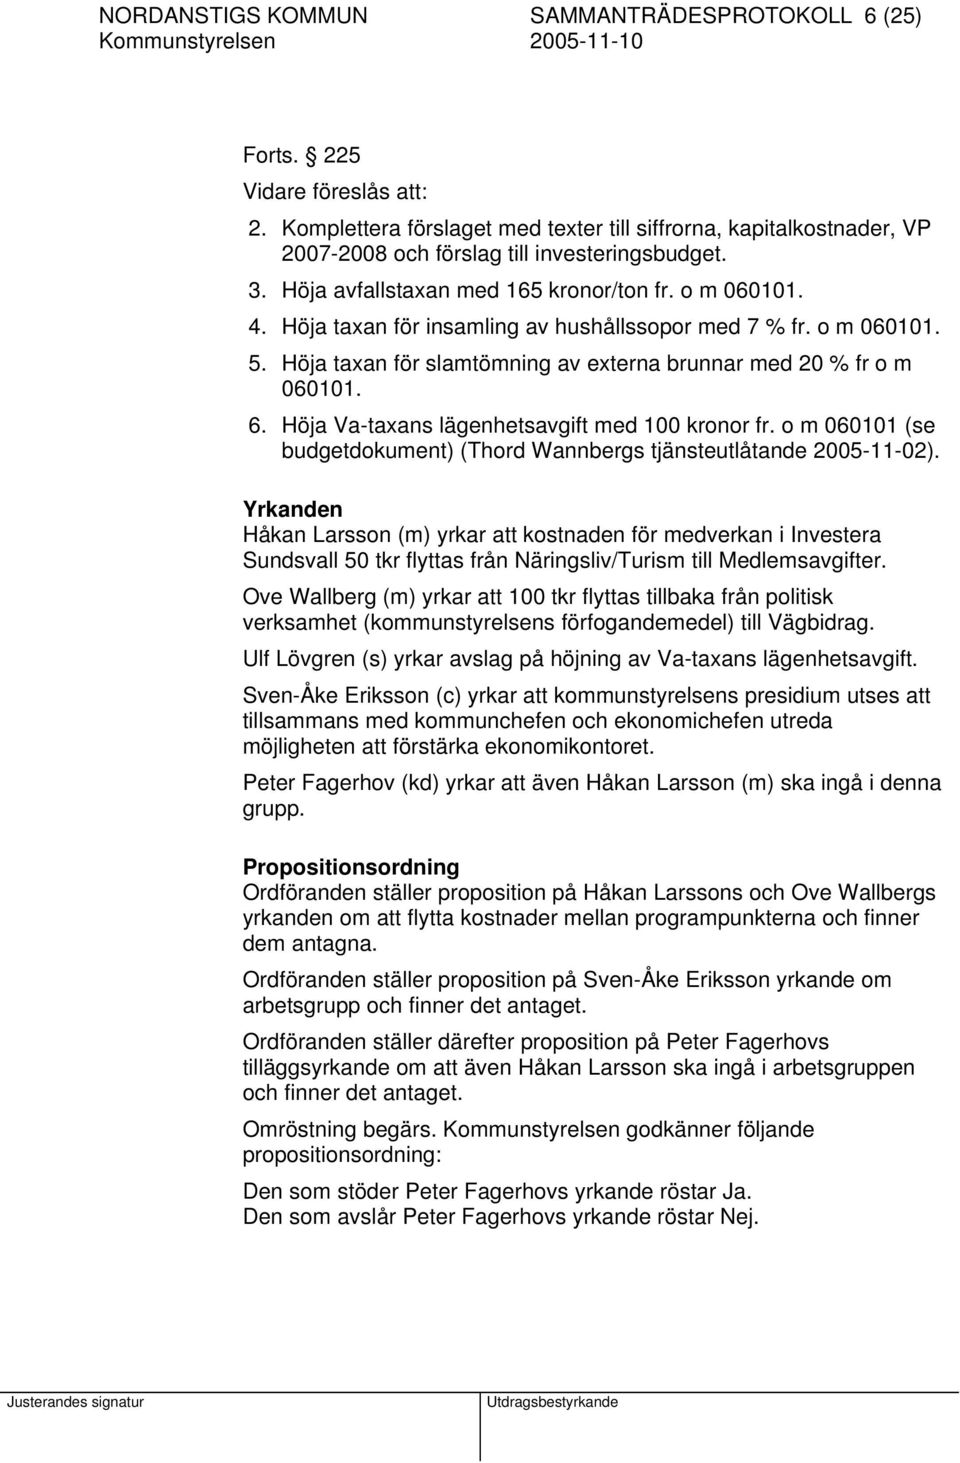 Höja Va-taxans lägenhetsavgift med 100 kronor fr. o m 060101 (se budgetdokument) (Thord Wannbergs tjänsteutlåtande 2005-11-02).